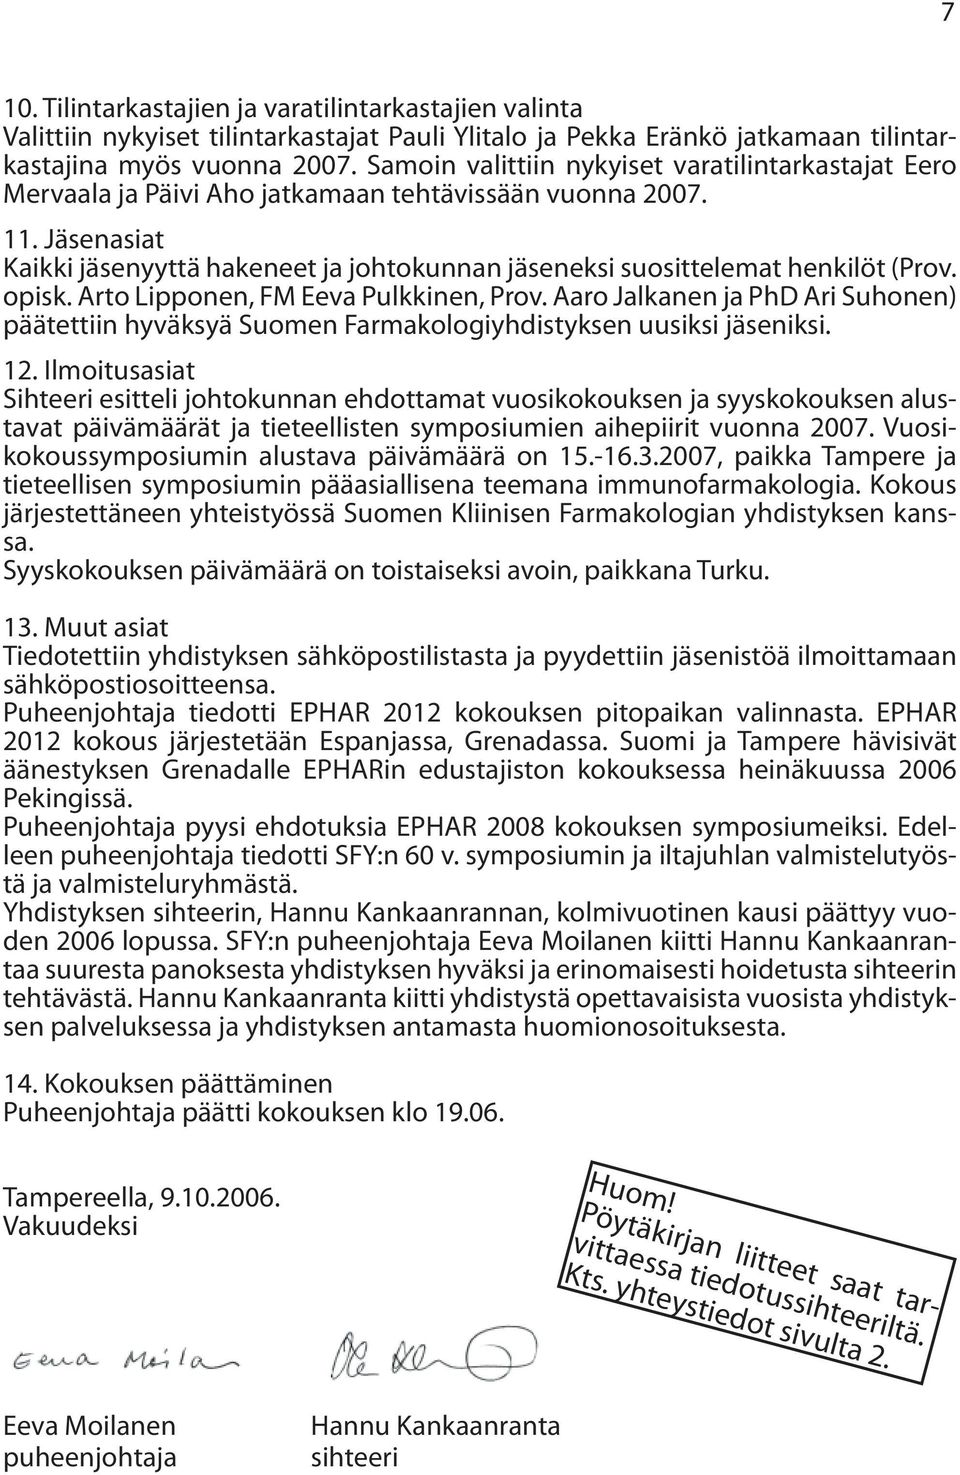 Jäsenasiat Kaikki jäsenyyttä hakeneet ja johtokunnan jäseneksi suosittelemat henkilöt (Prov. opisk. Arto Lipponen, FM Eeva Pulkkinen, Prov.